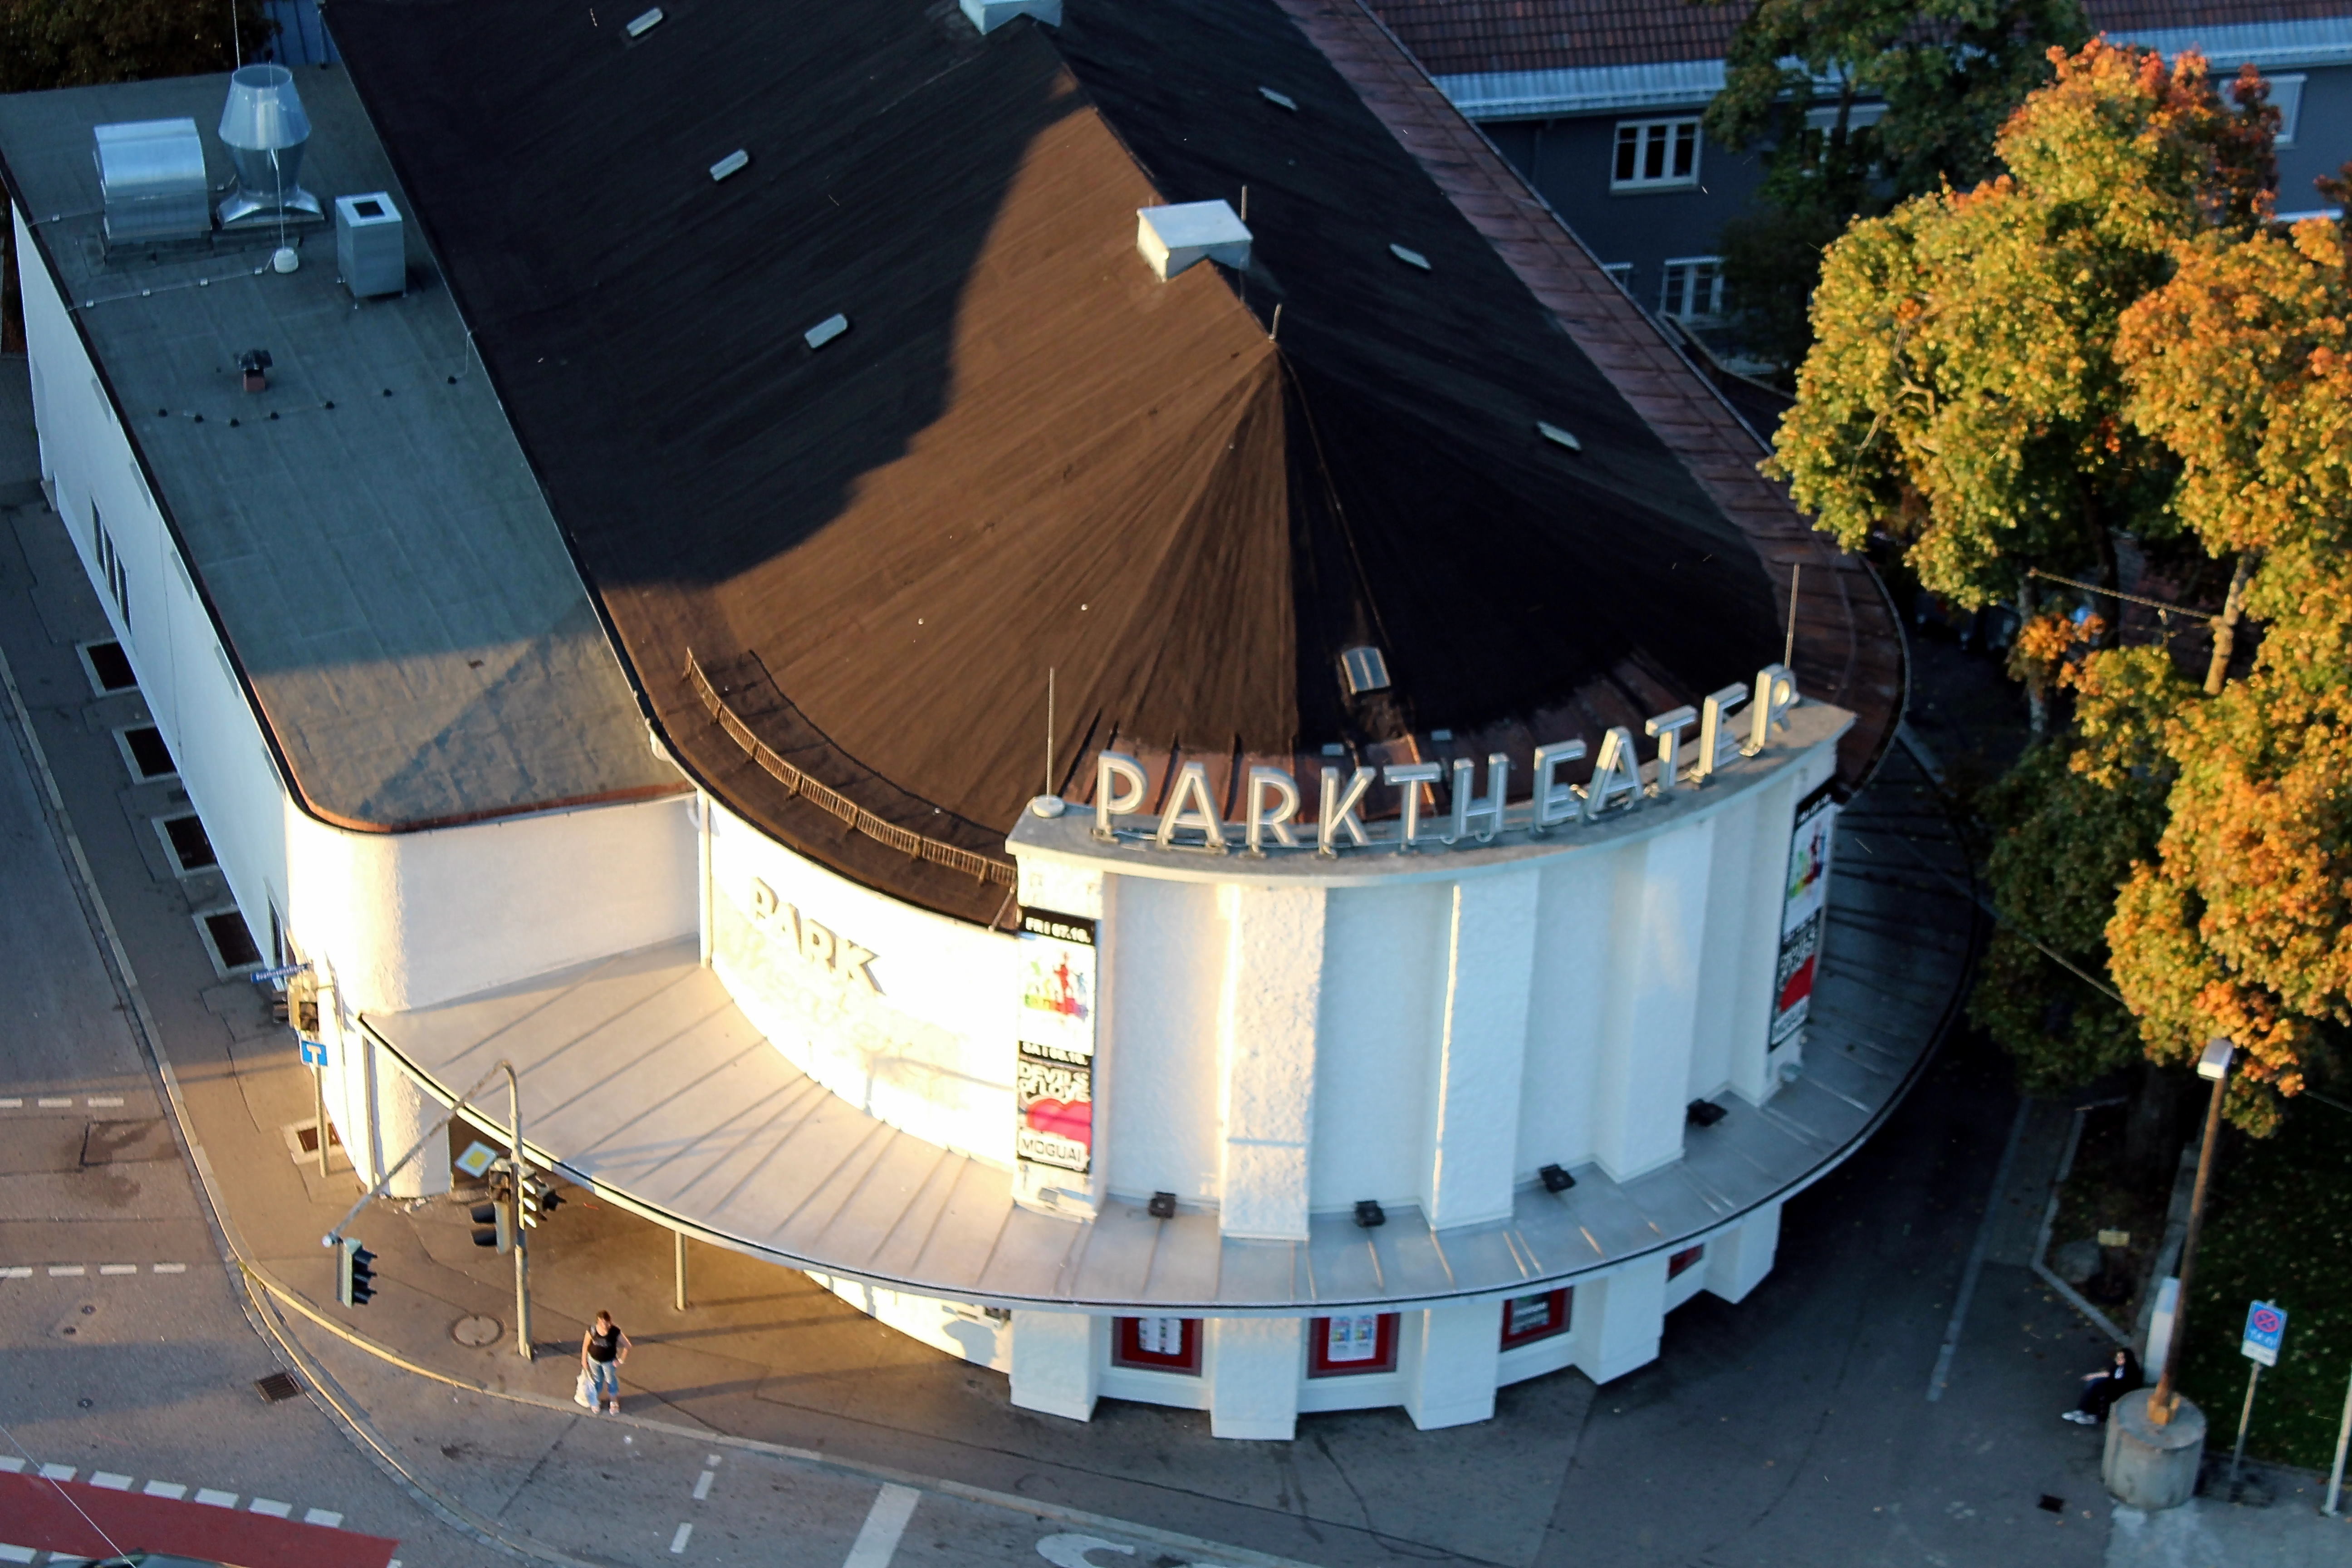 Parktheater in Kempten, Herbst 2011. Aufgenommen vom Parkhotel Kempten.